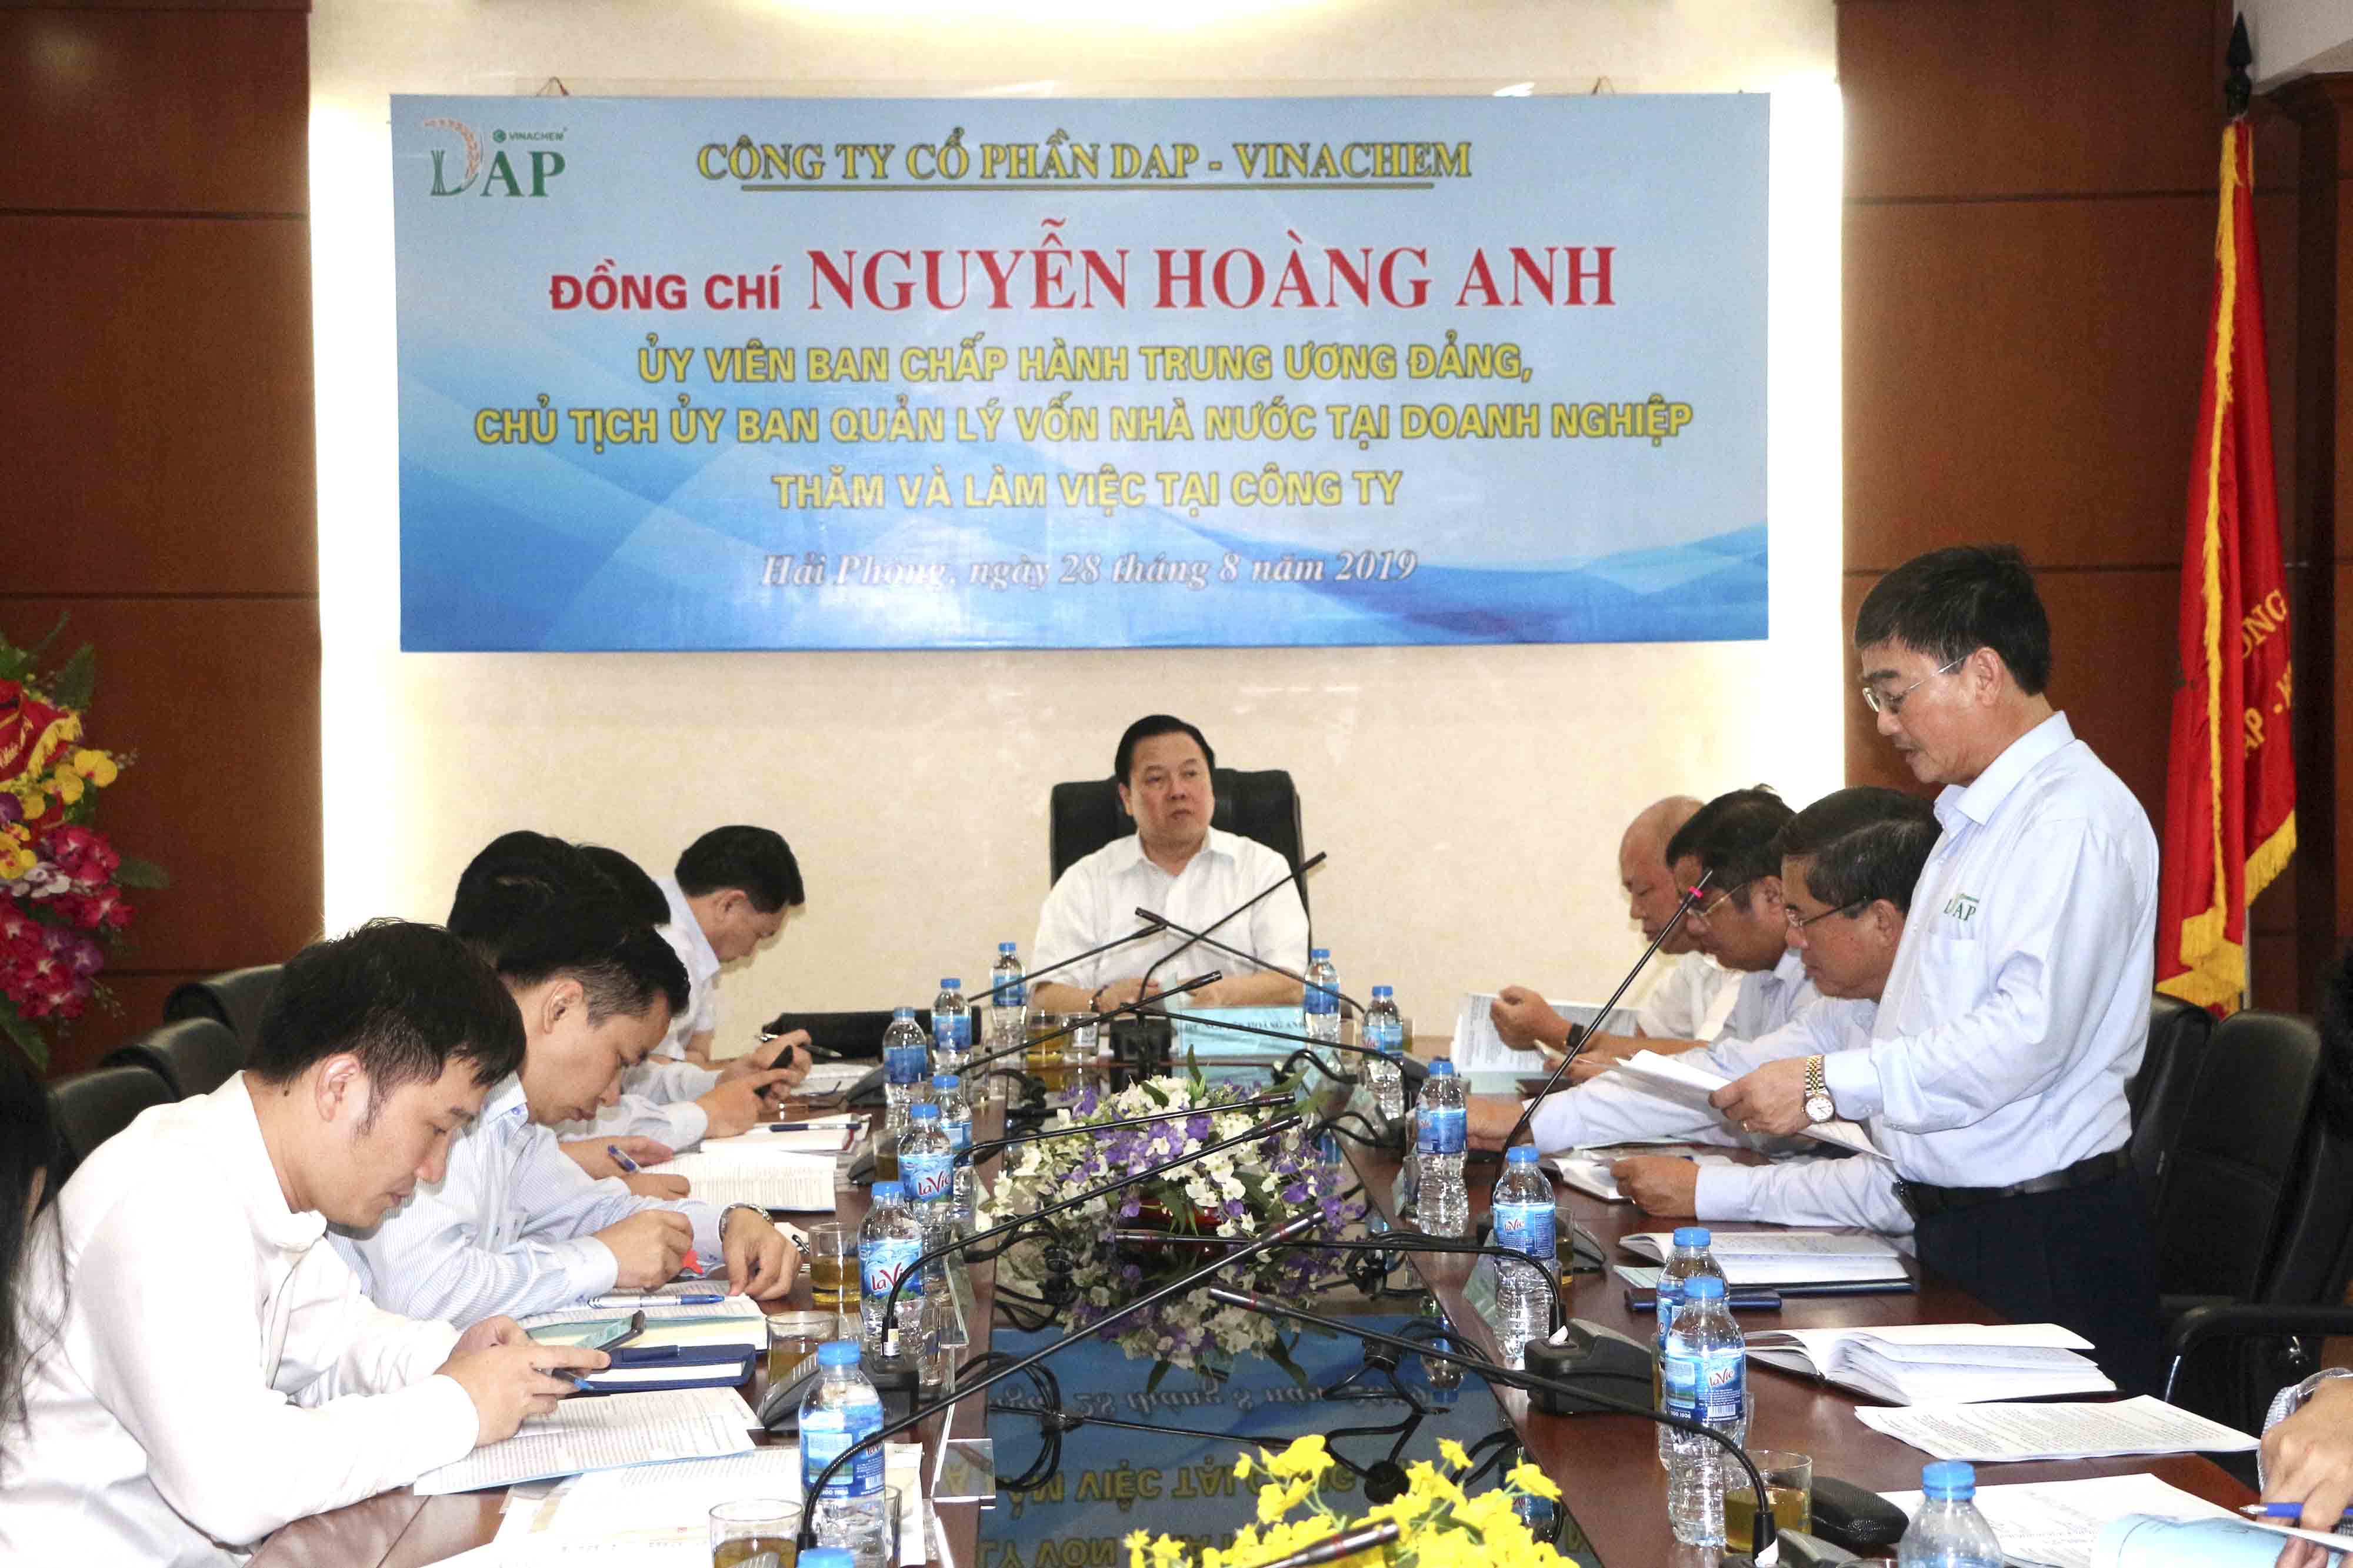 Ông Nguyễn Hoàng Anh - Chủ tịch Ủy ban Quản lý vốn Nhà nước tại doanh nghiệp làm việc với Công ty Cổ phần DAP - VINACHEM